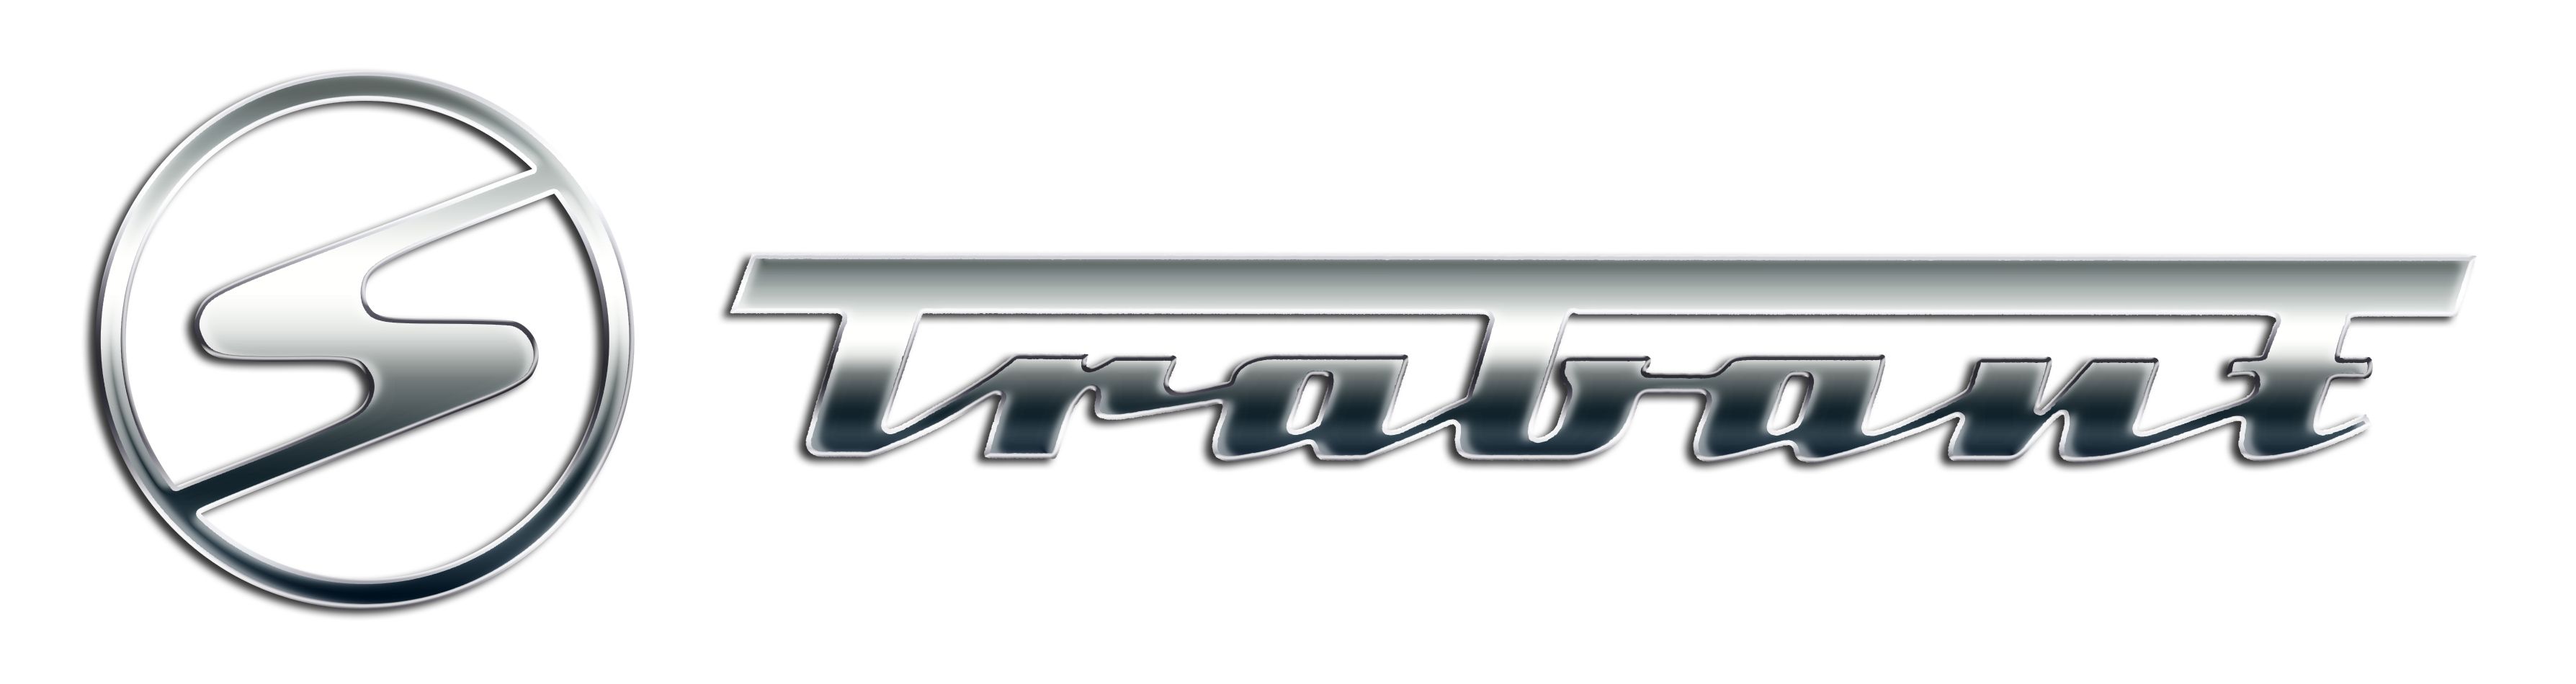 Trabant logo image